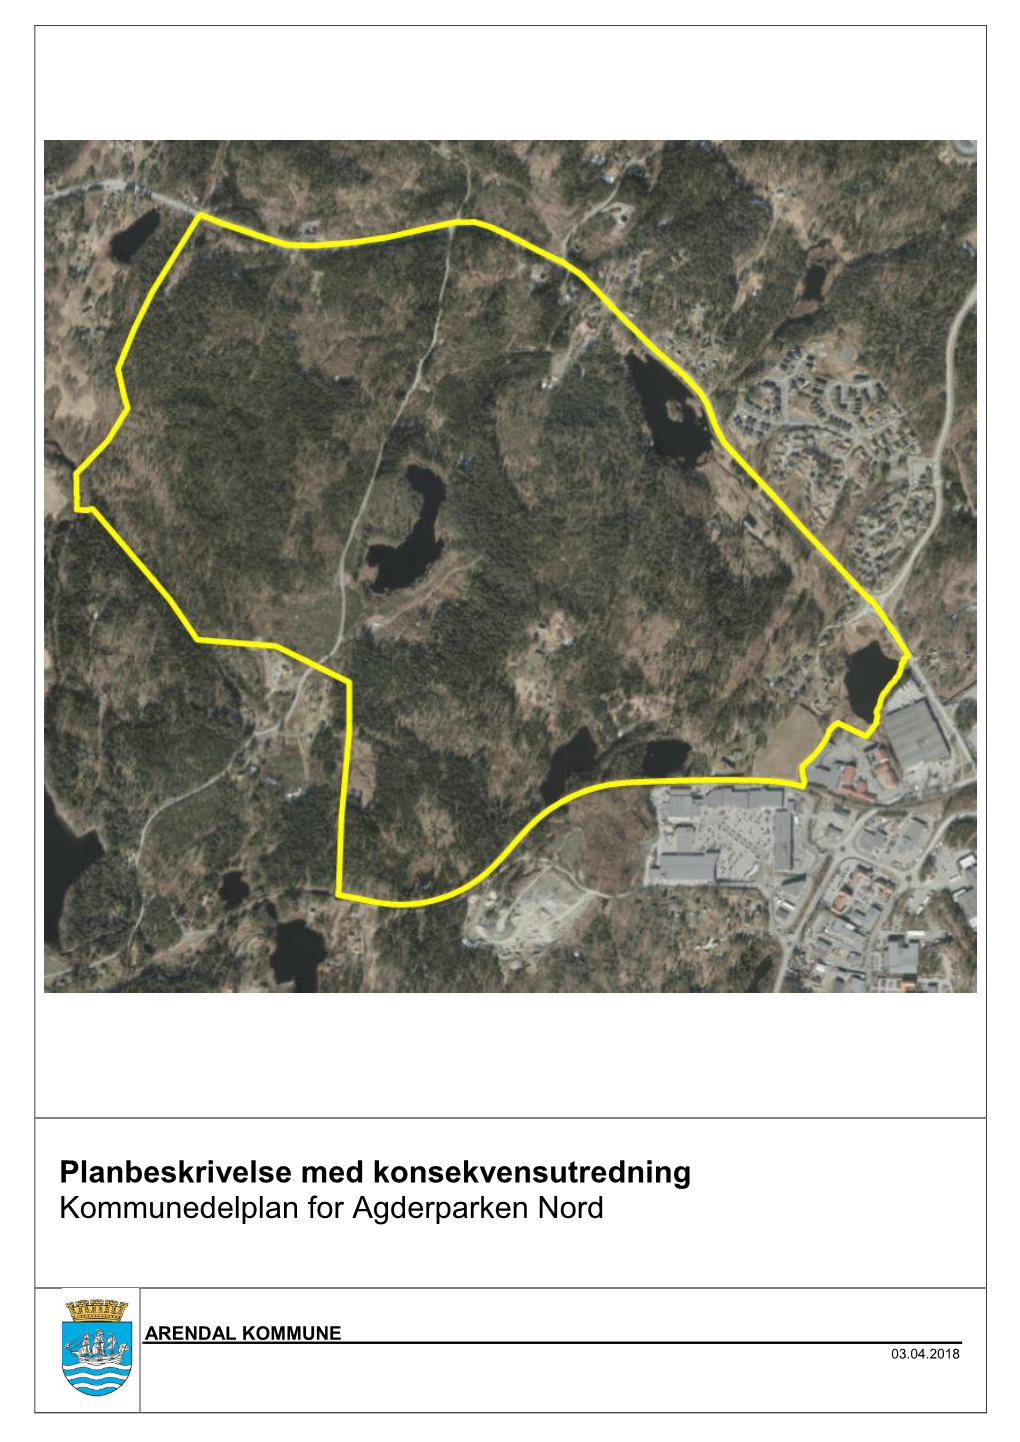 Planbeskrivelse Med Konsekvensutredning Kommunedelplan for Agderparken Nord